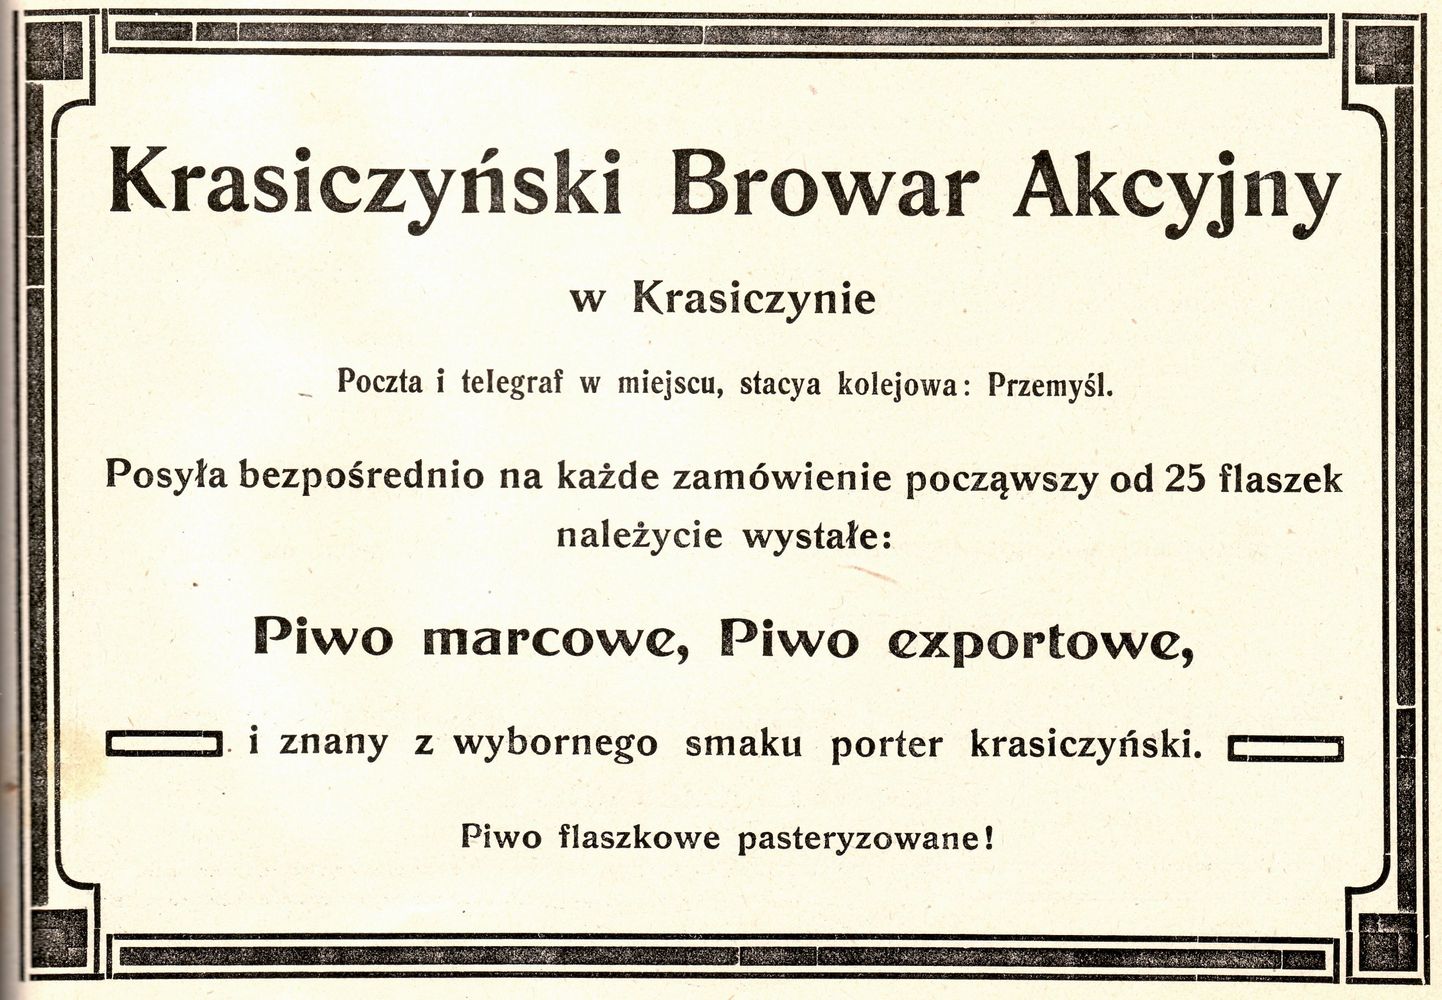 Reklama prasowa Krasiczyńskiego Browaru